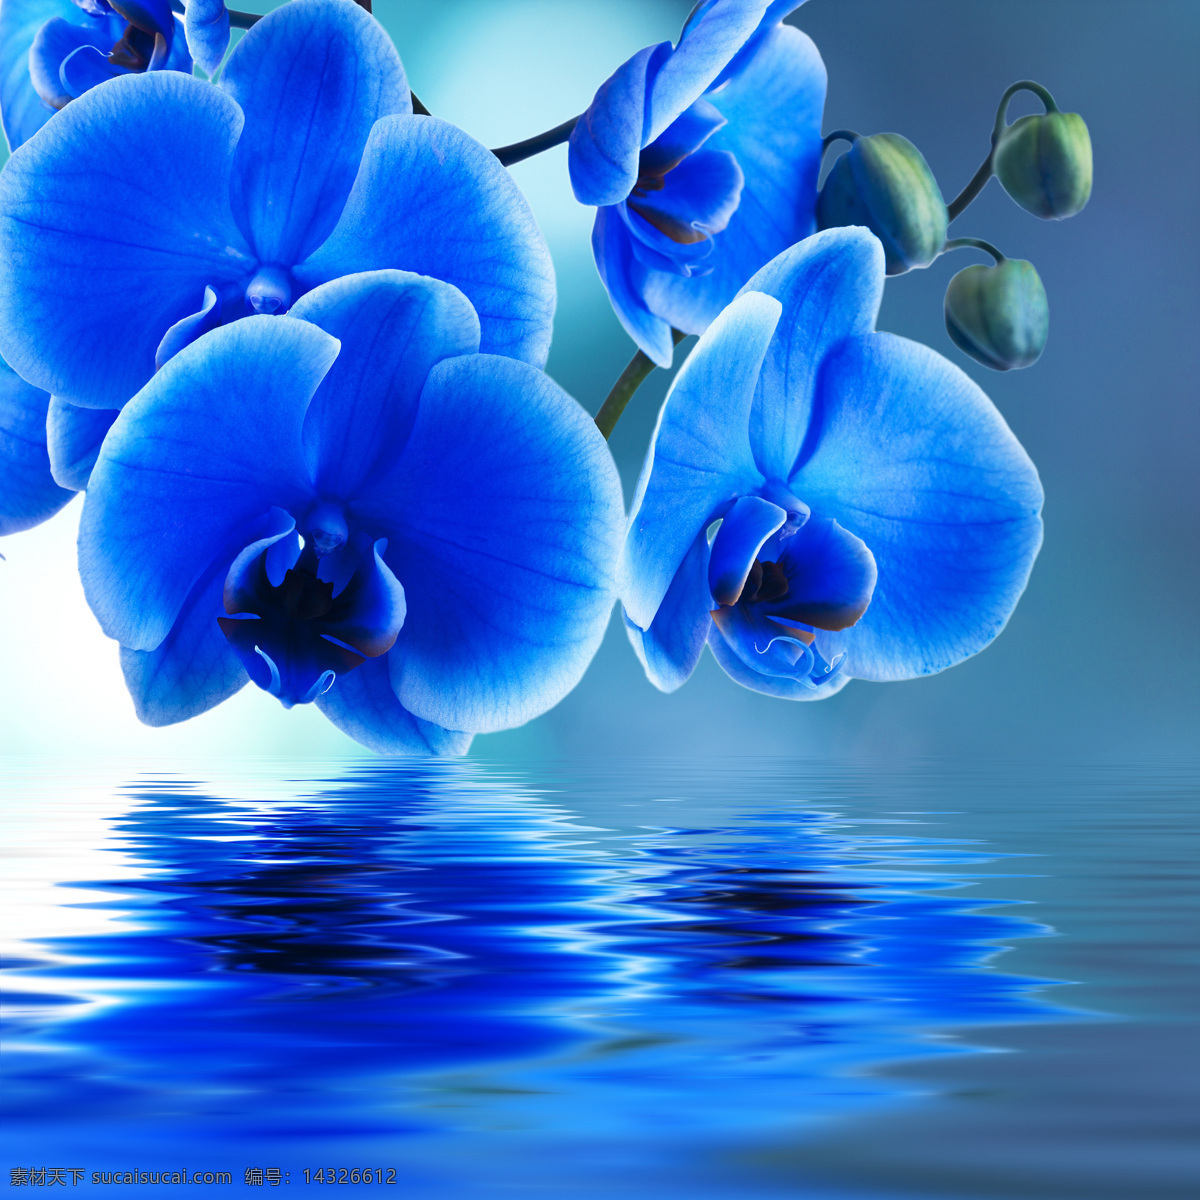 美丽 蓝色 蝴蝶兰 高清 花朵 兰花 花卉